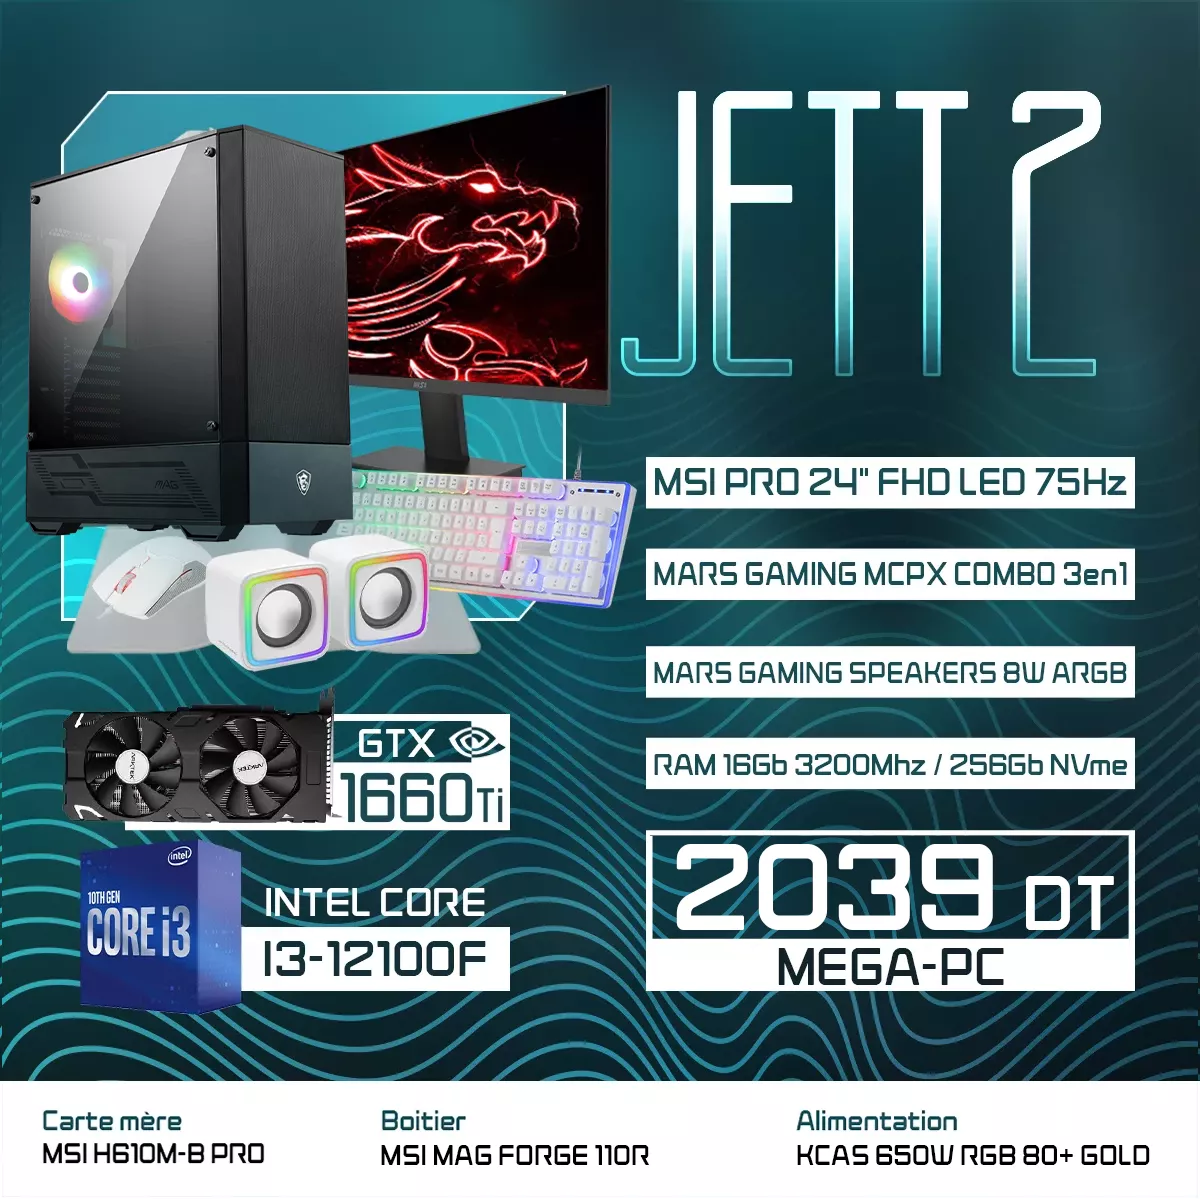 JETT 2 | I3-12100F | GTX 1660 TI | 16GB RAM | 256GB NVMe